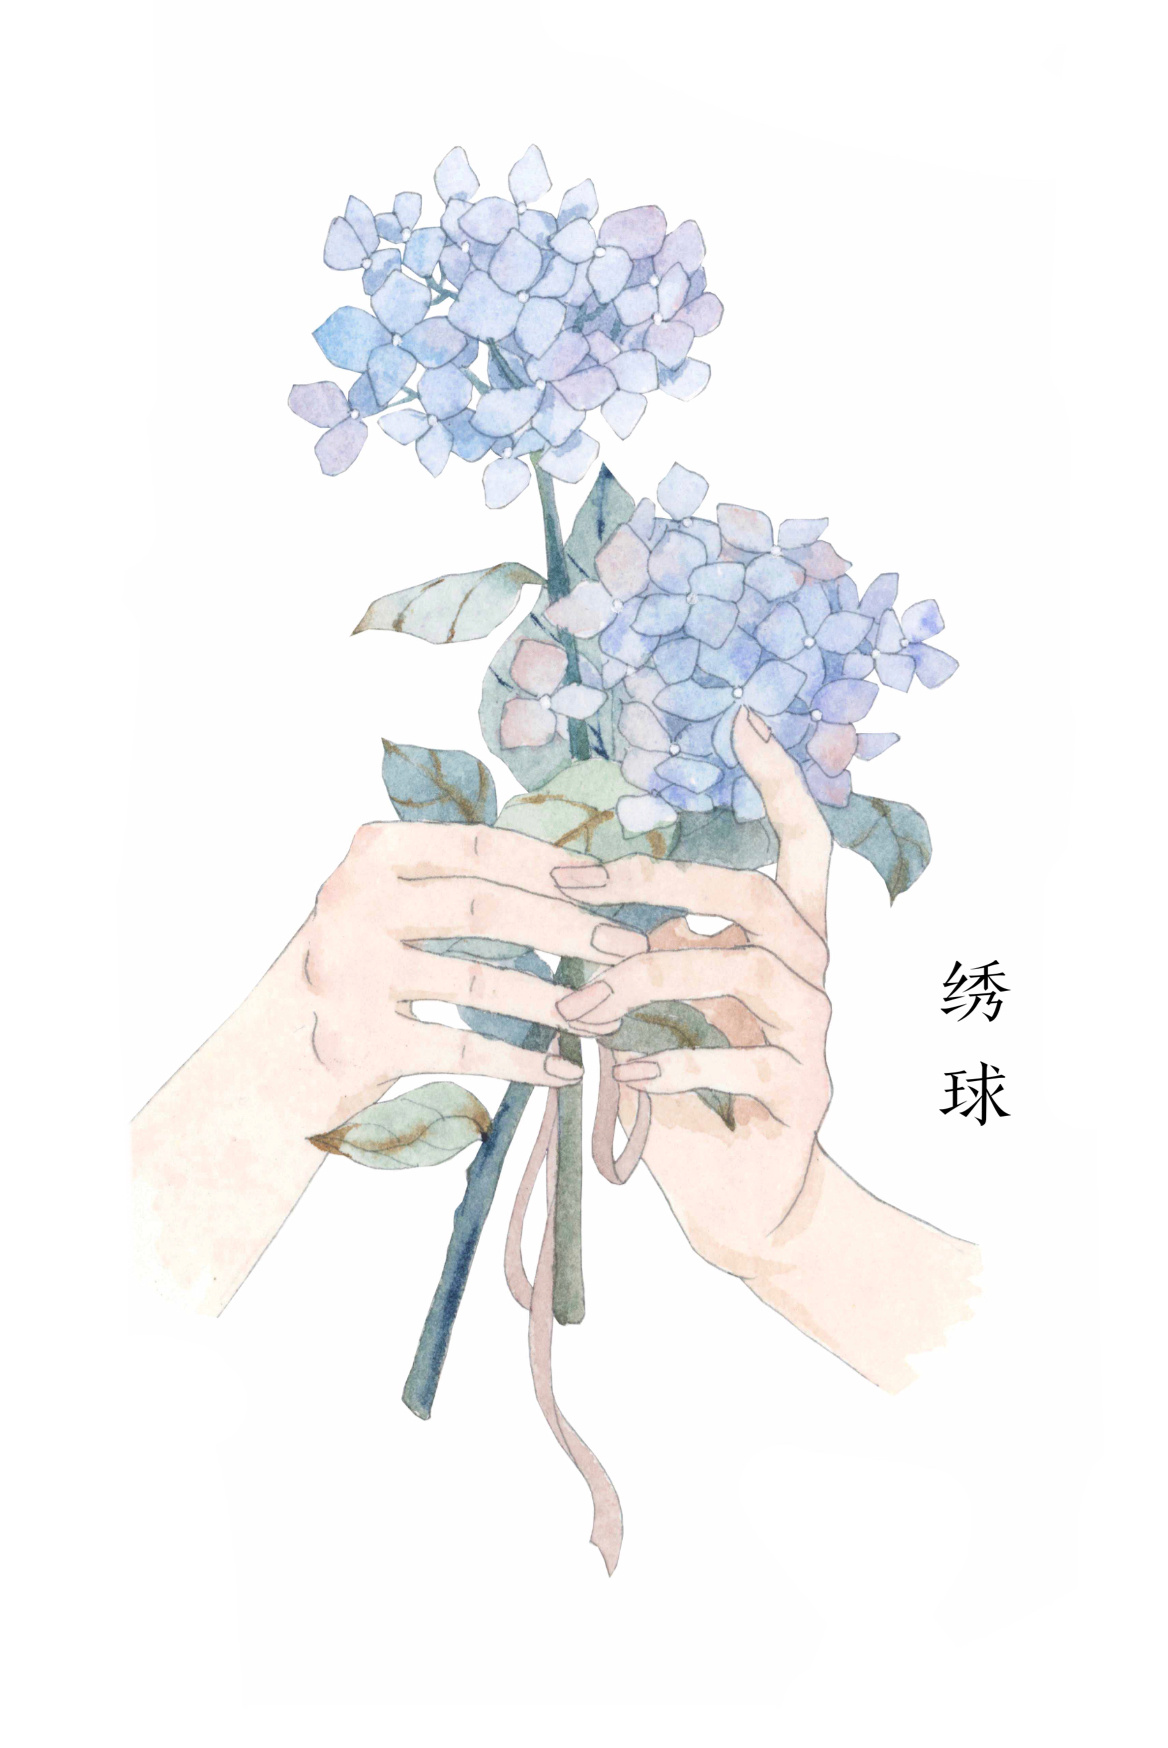 年轻女子手拿鲜花拥抱男朋友-蓝牛仔影像-中国原创广告影像素材